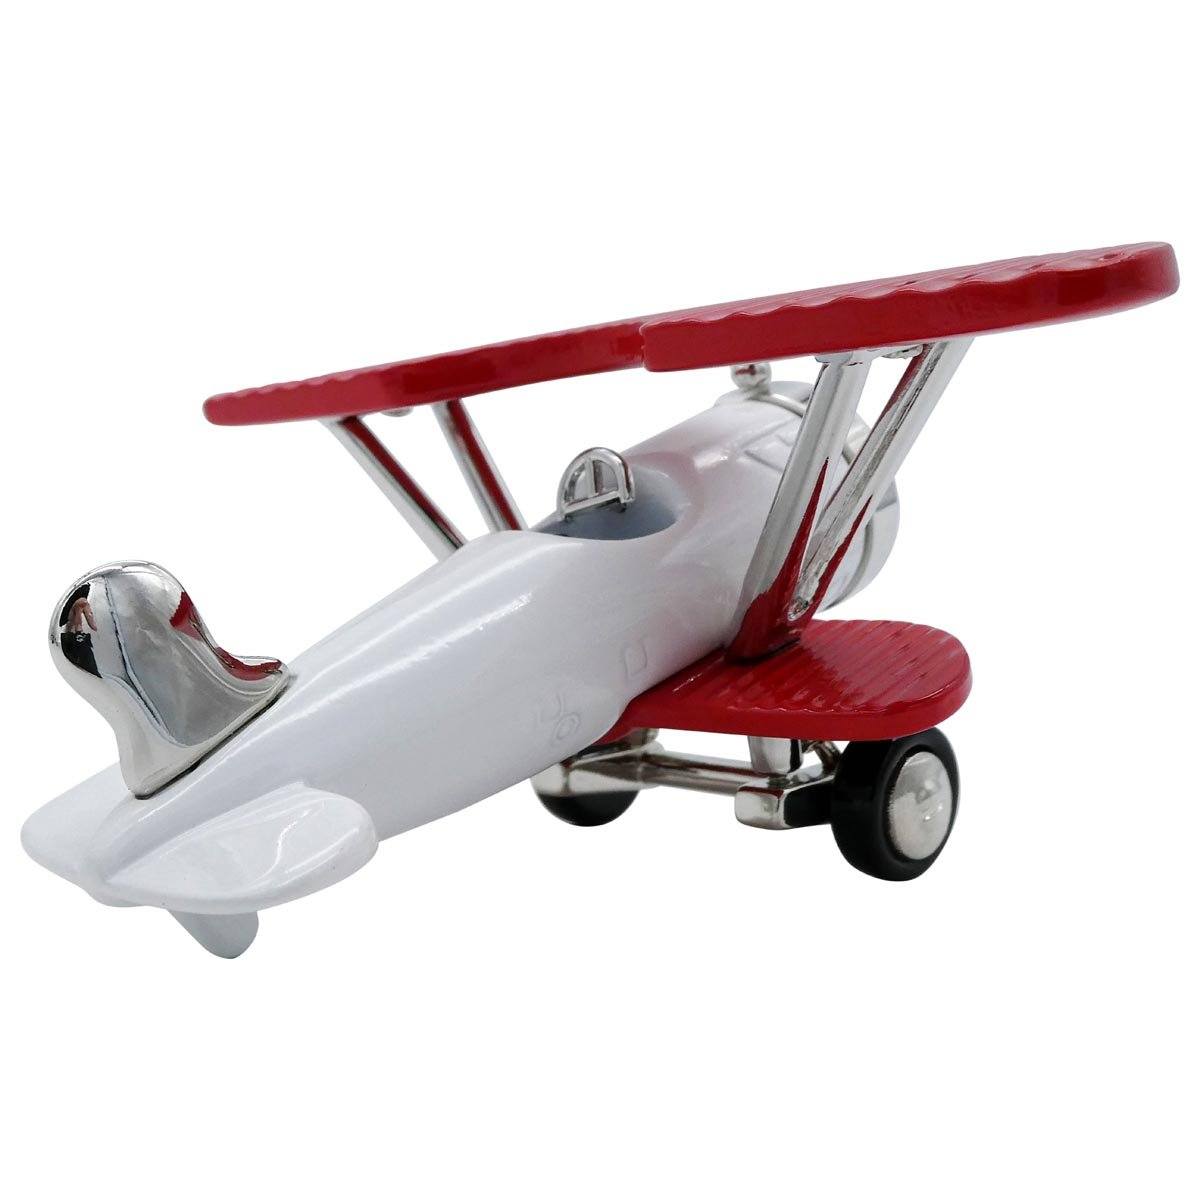 Pilot Toys White and Red Biplane Desk Clock - PilotMall.com